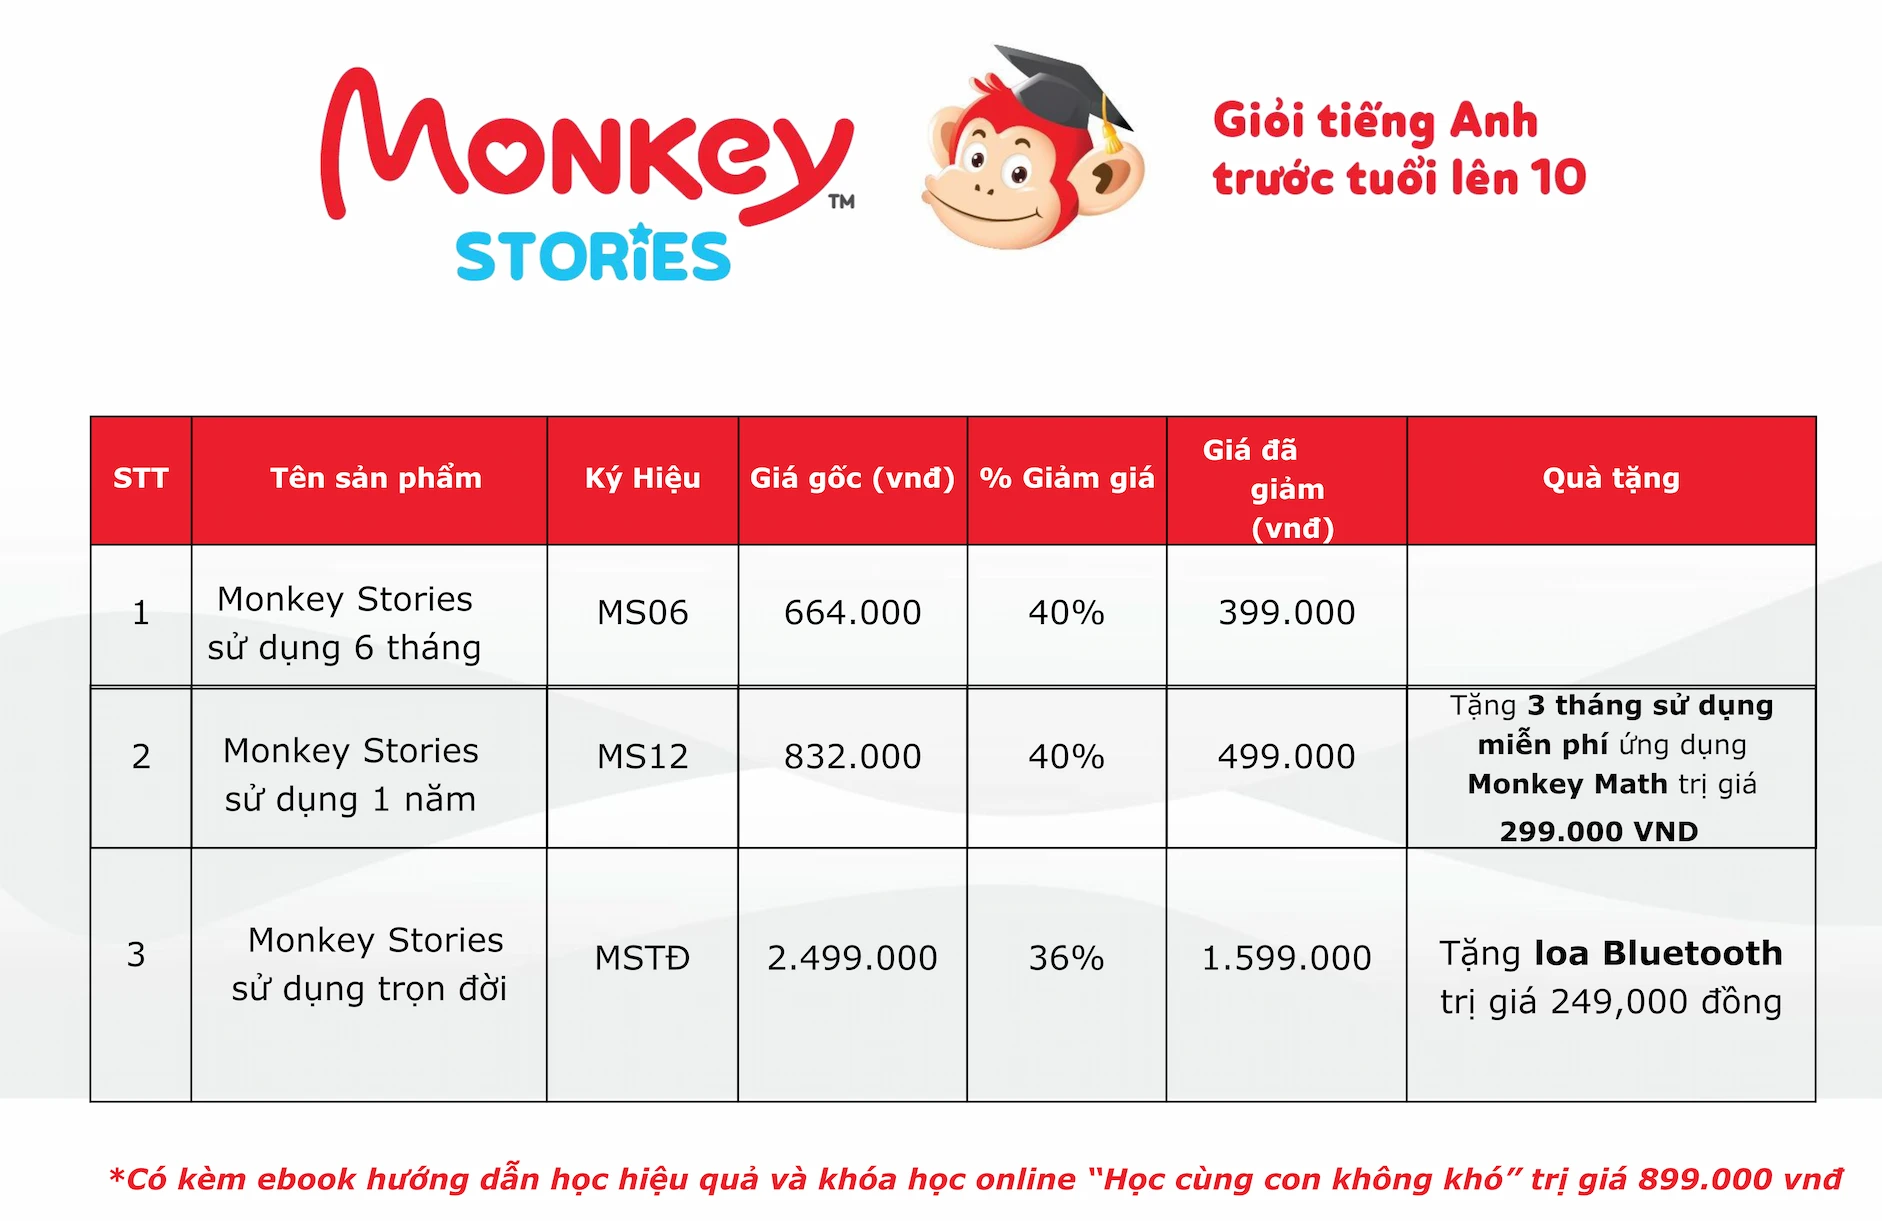 Monkey Stories trọn đời giá bao nhiêu?